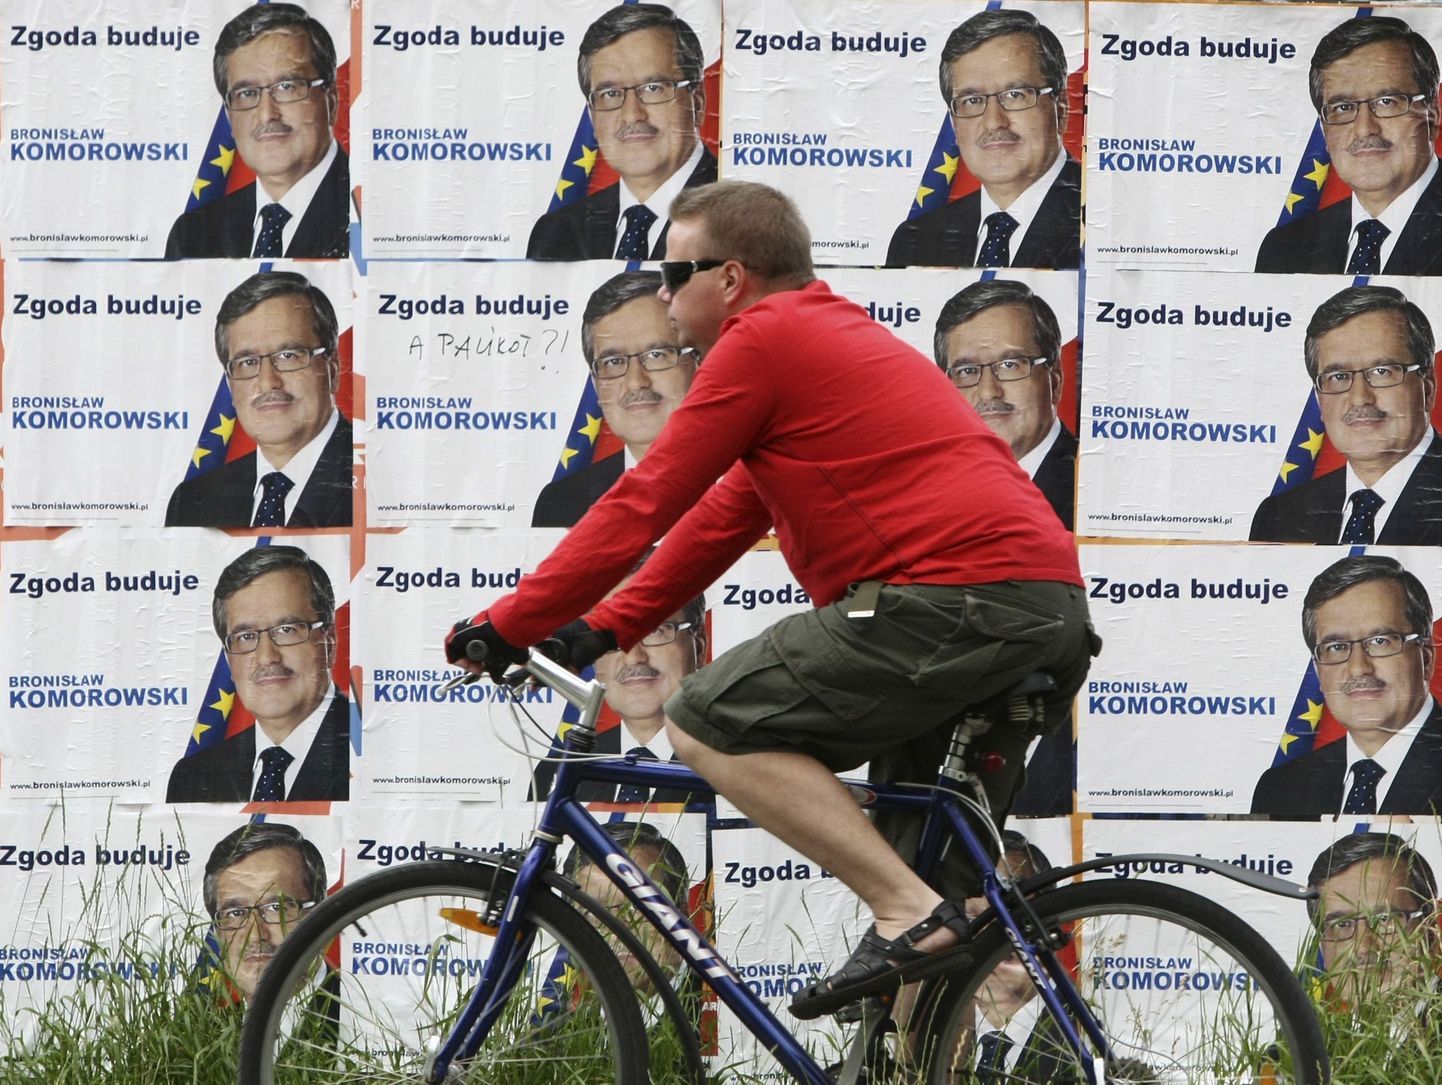 Jalgrattur sõitis eile Varssavi kesklinnas mööda presidendivalimiste suursoosiku Bronislaw Komorowski valimisplakatitest.